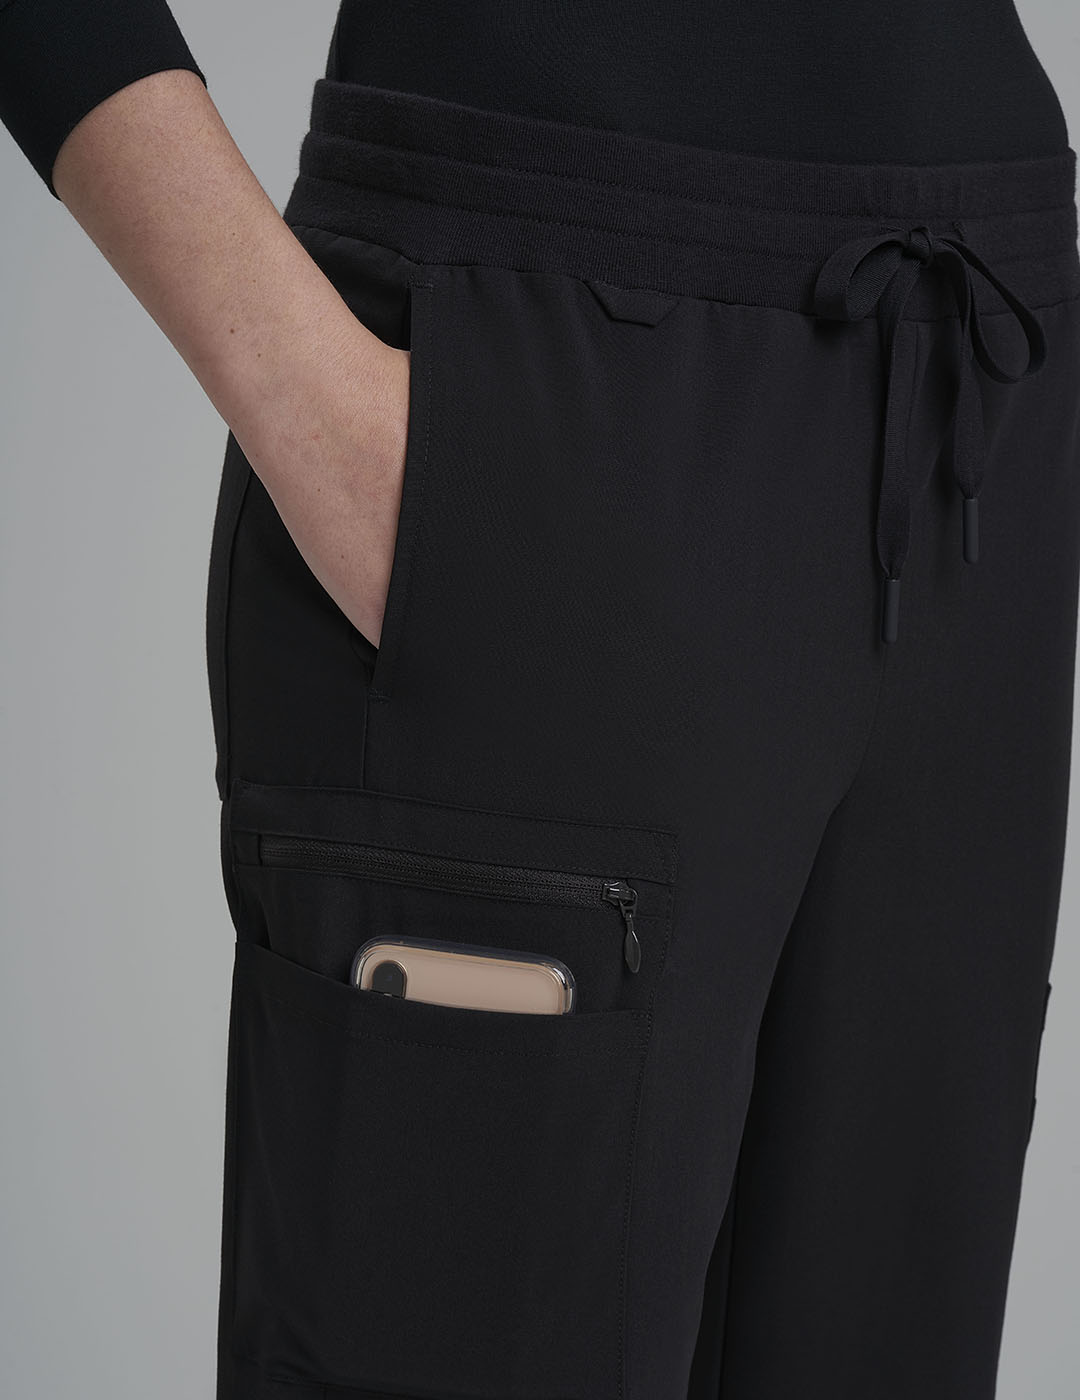 Womens 9-Pocket Straight Leg Scrub Pants